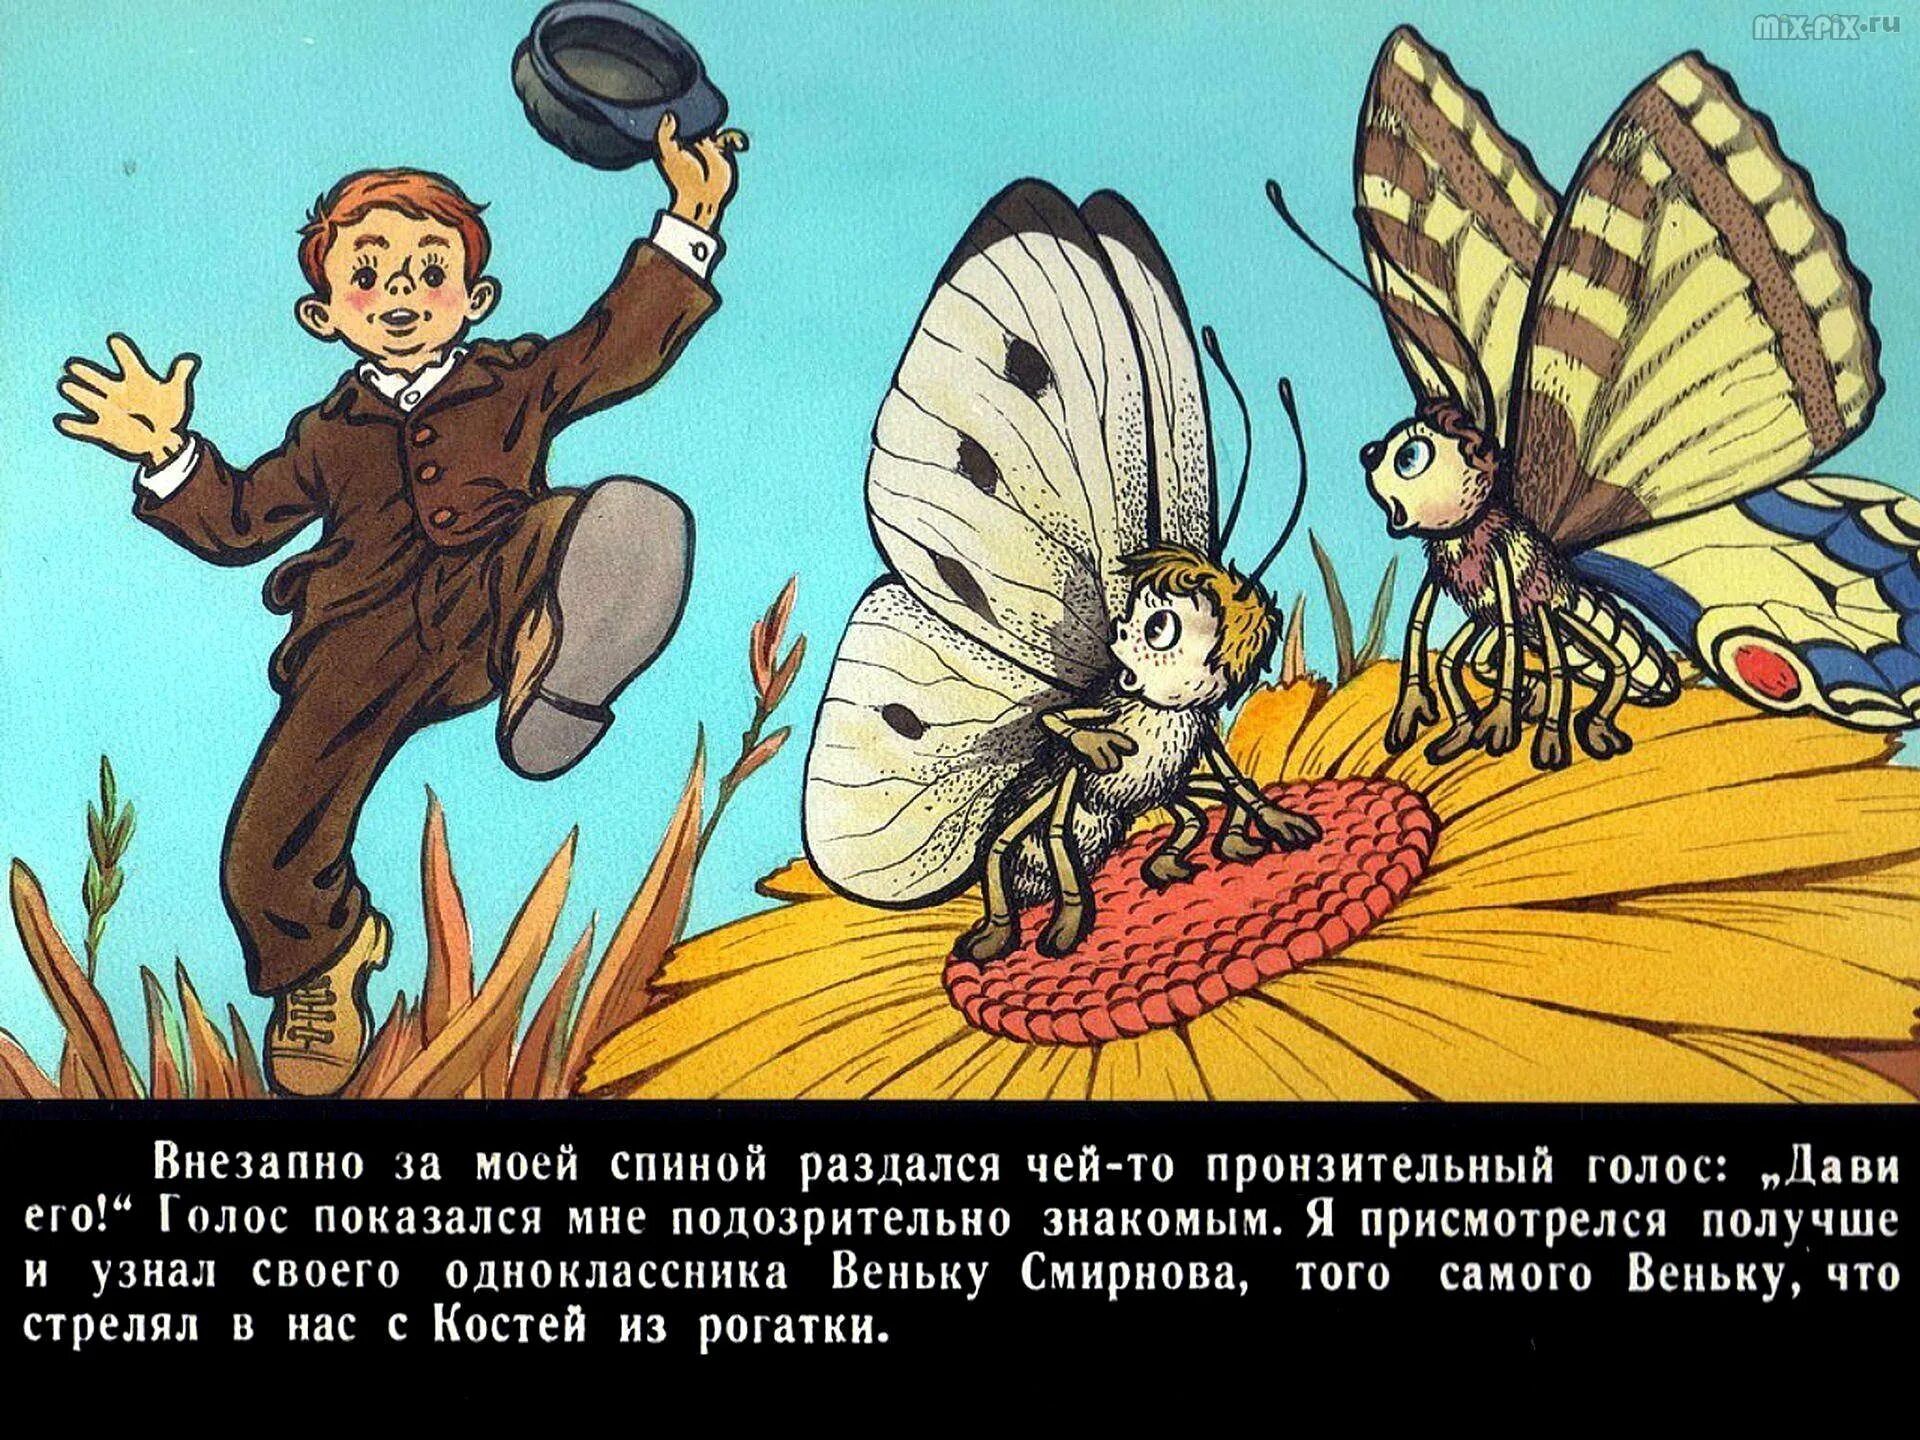 Читать рассказ бывшие люди. Иллюстрации к книге Медведев Баранкин будь человеком. Иллюстрации из книги Баранкин будь человеком.